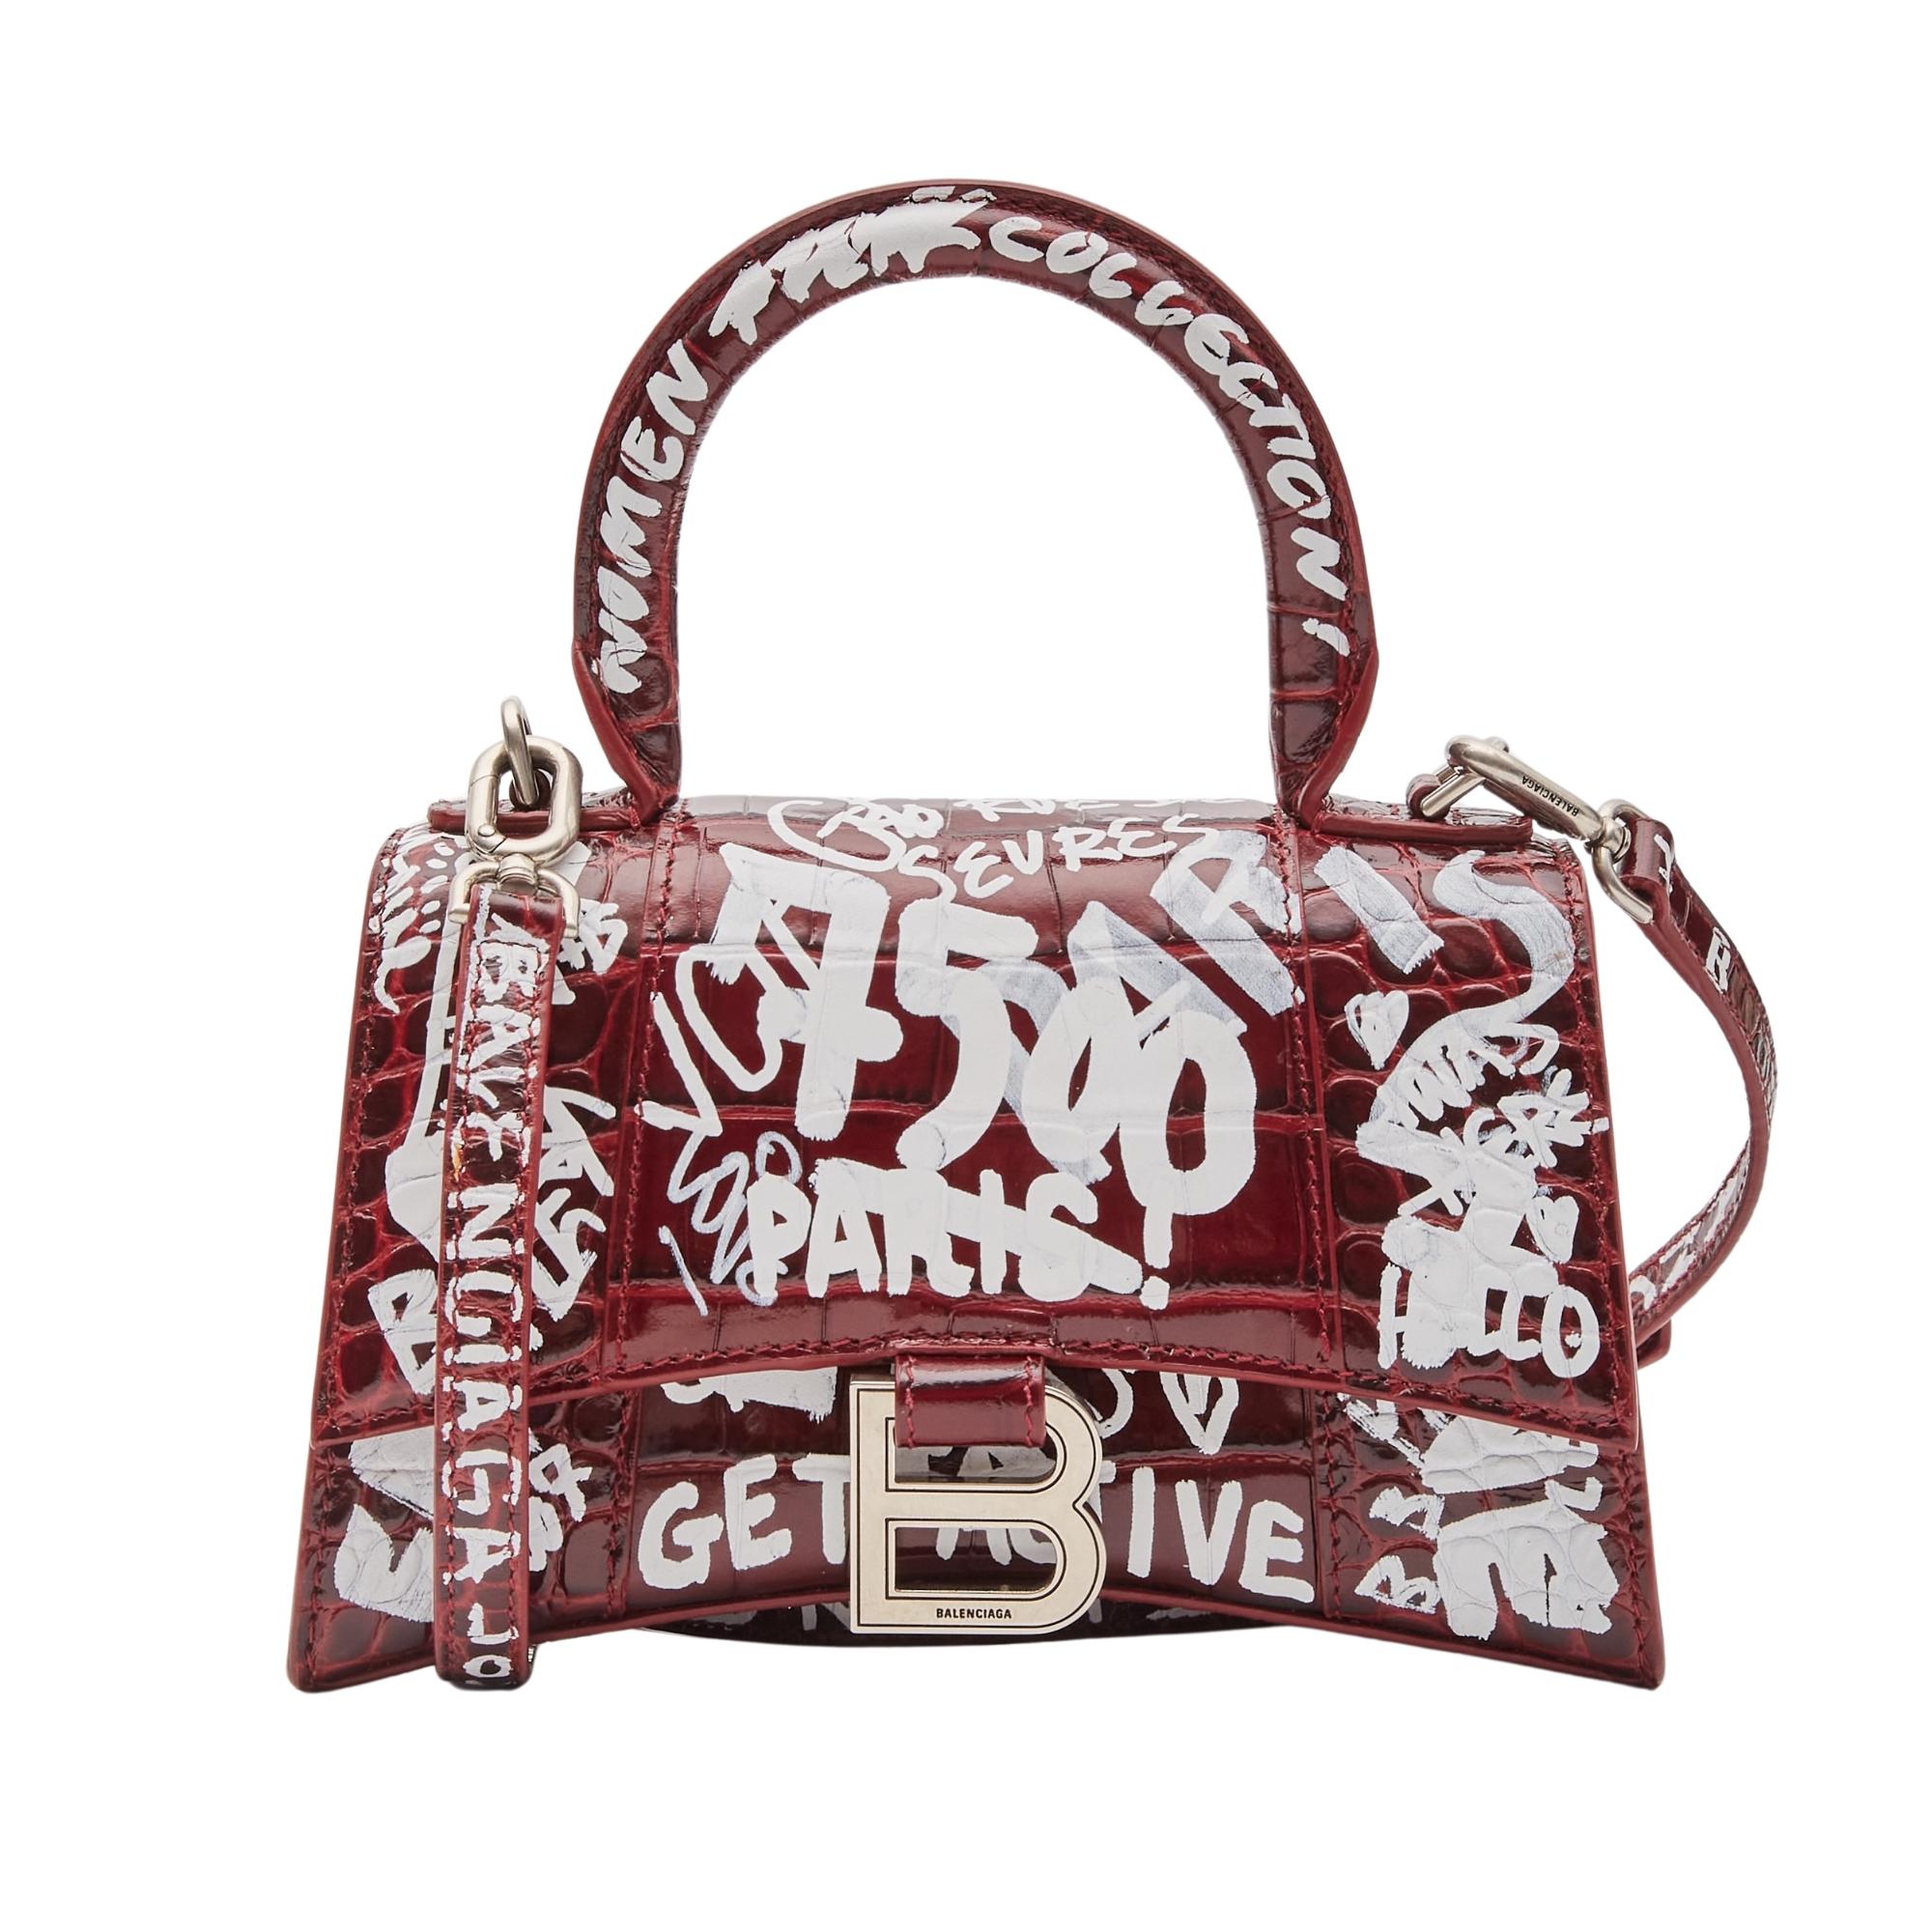 Diese Handtasche ist aus burgunderfarbenem Kalbsleder mit Krokodilprägung und weißem Graffitidruck gefertigt. Die Tasche hat einen robusten Ledergriff mit silbernen Gliedern, ein auffälliges b-Logo auf der Vorderklappe und einen optionalen,